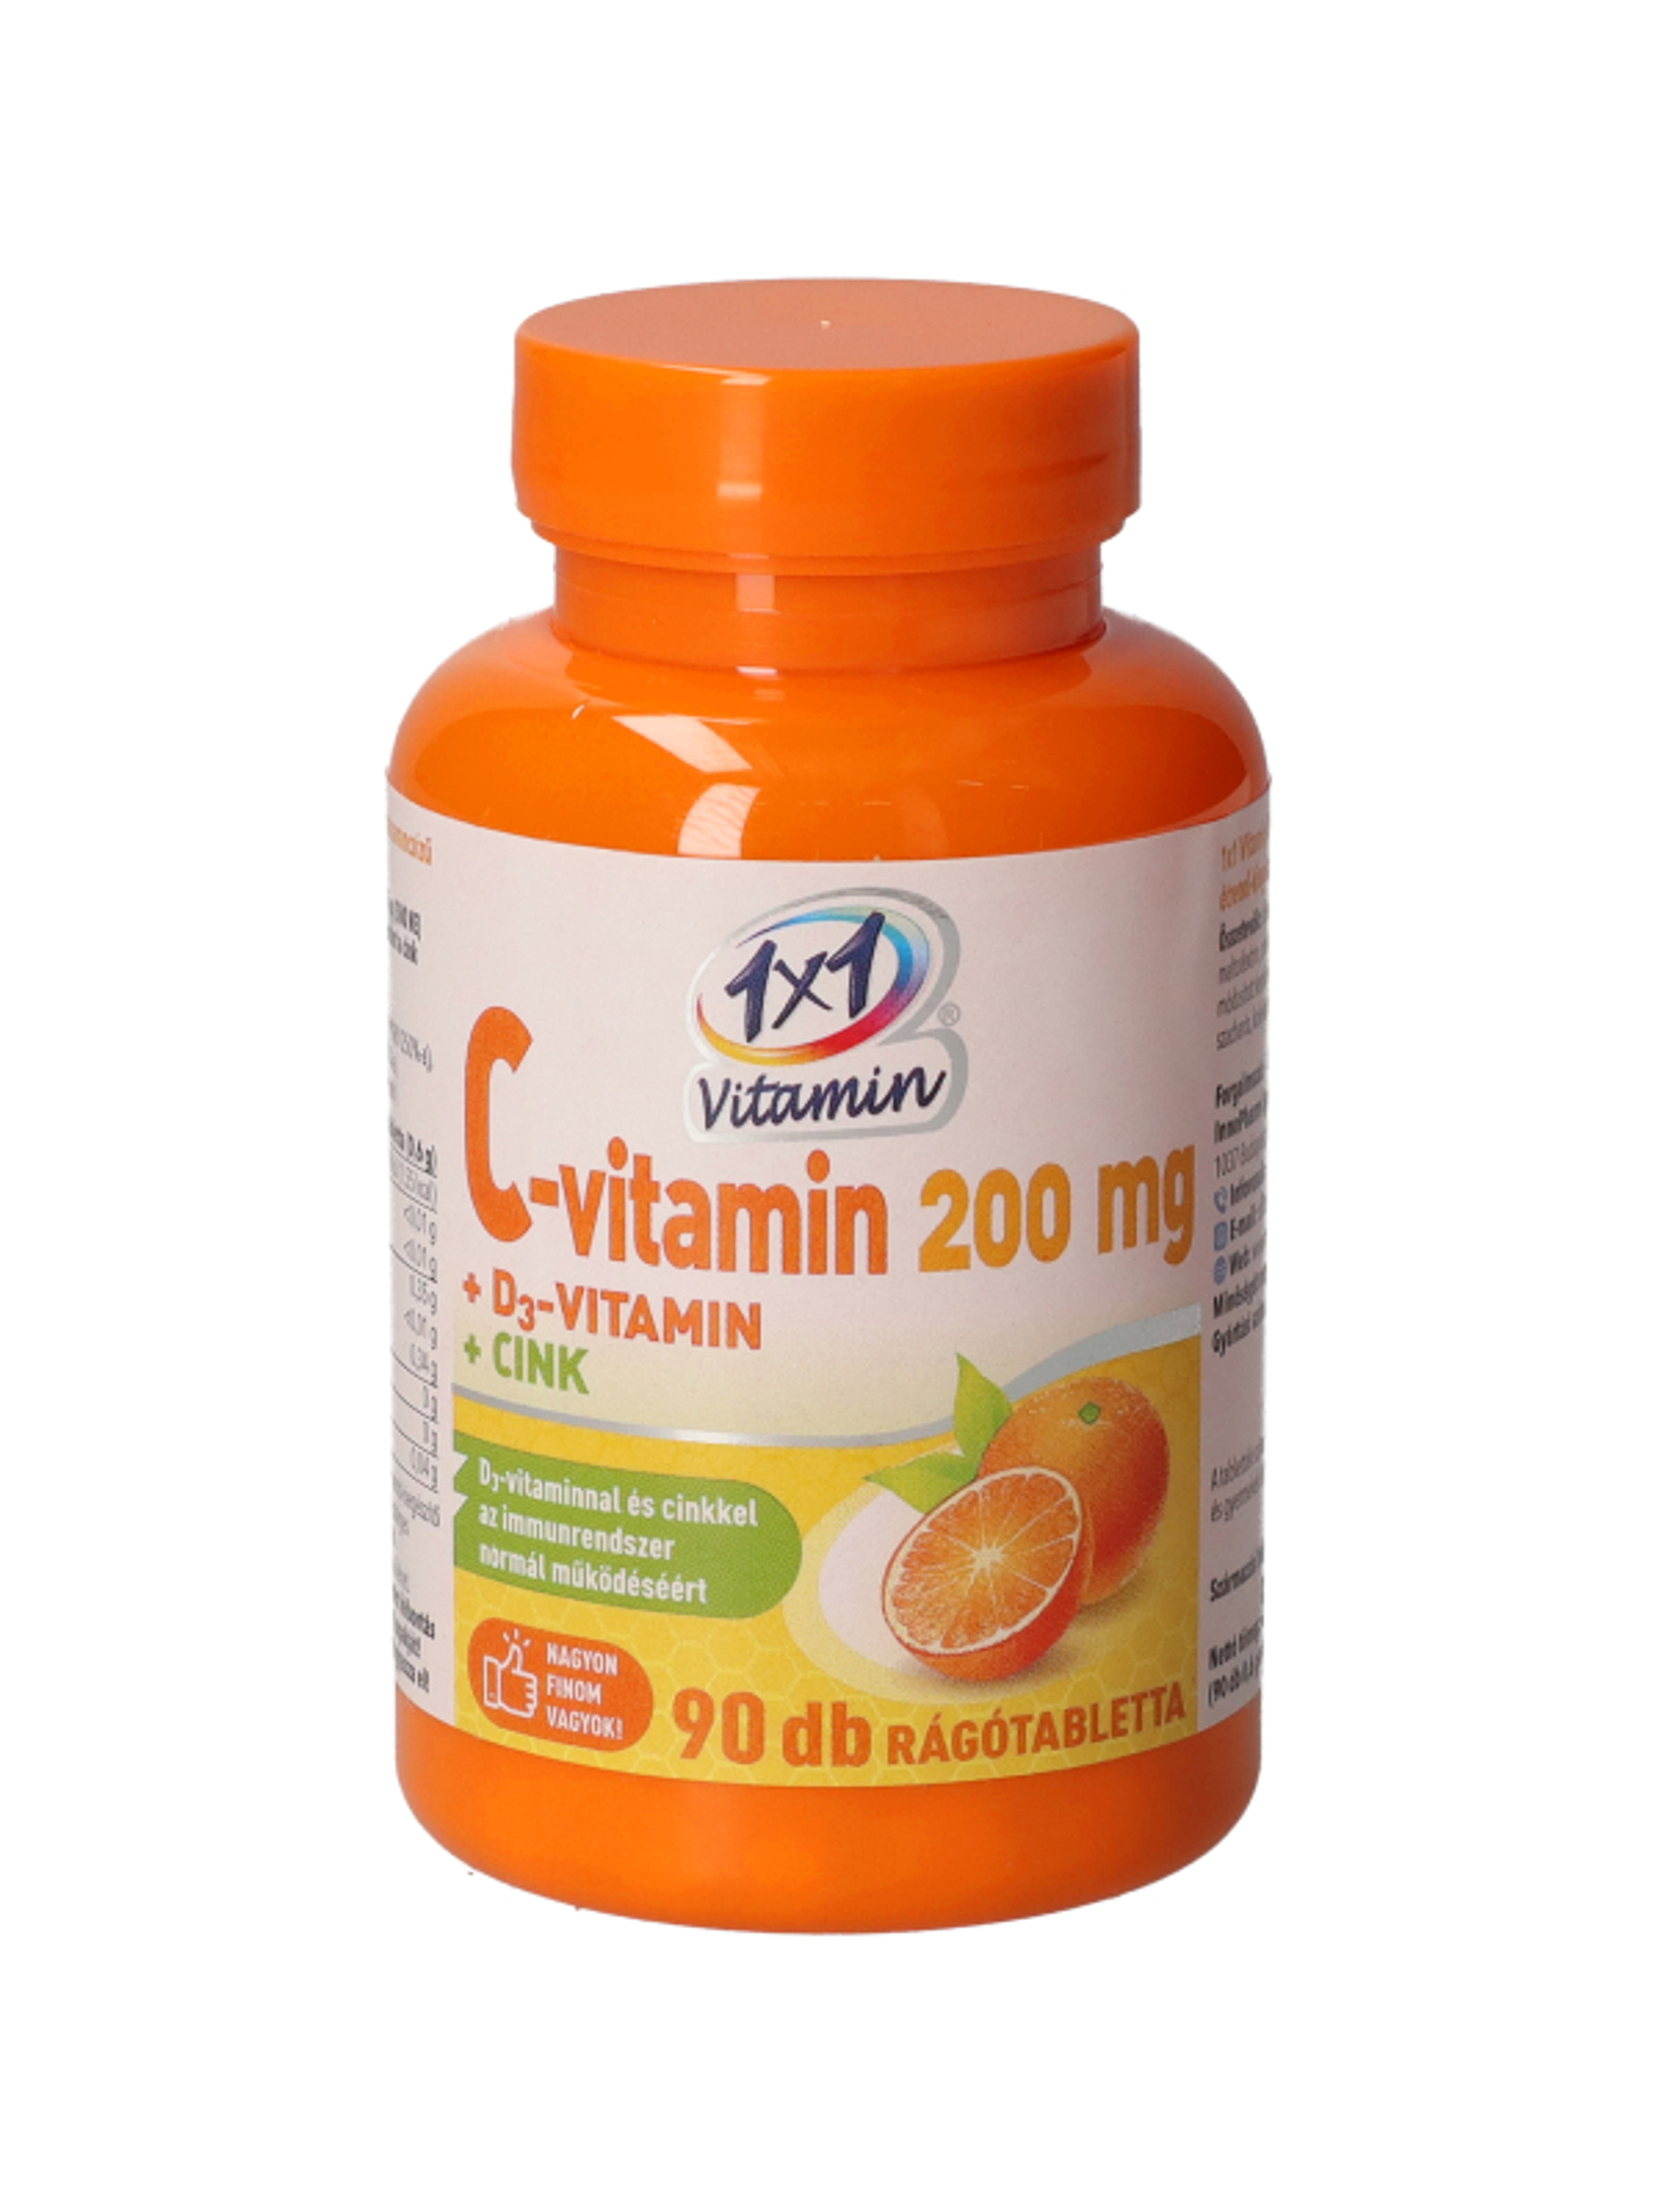 1x1 Vitaday C-vitamin 200 D3 Cink Rágótabletta - 90 db